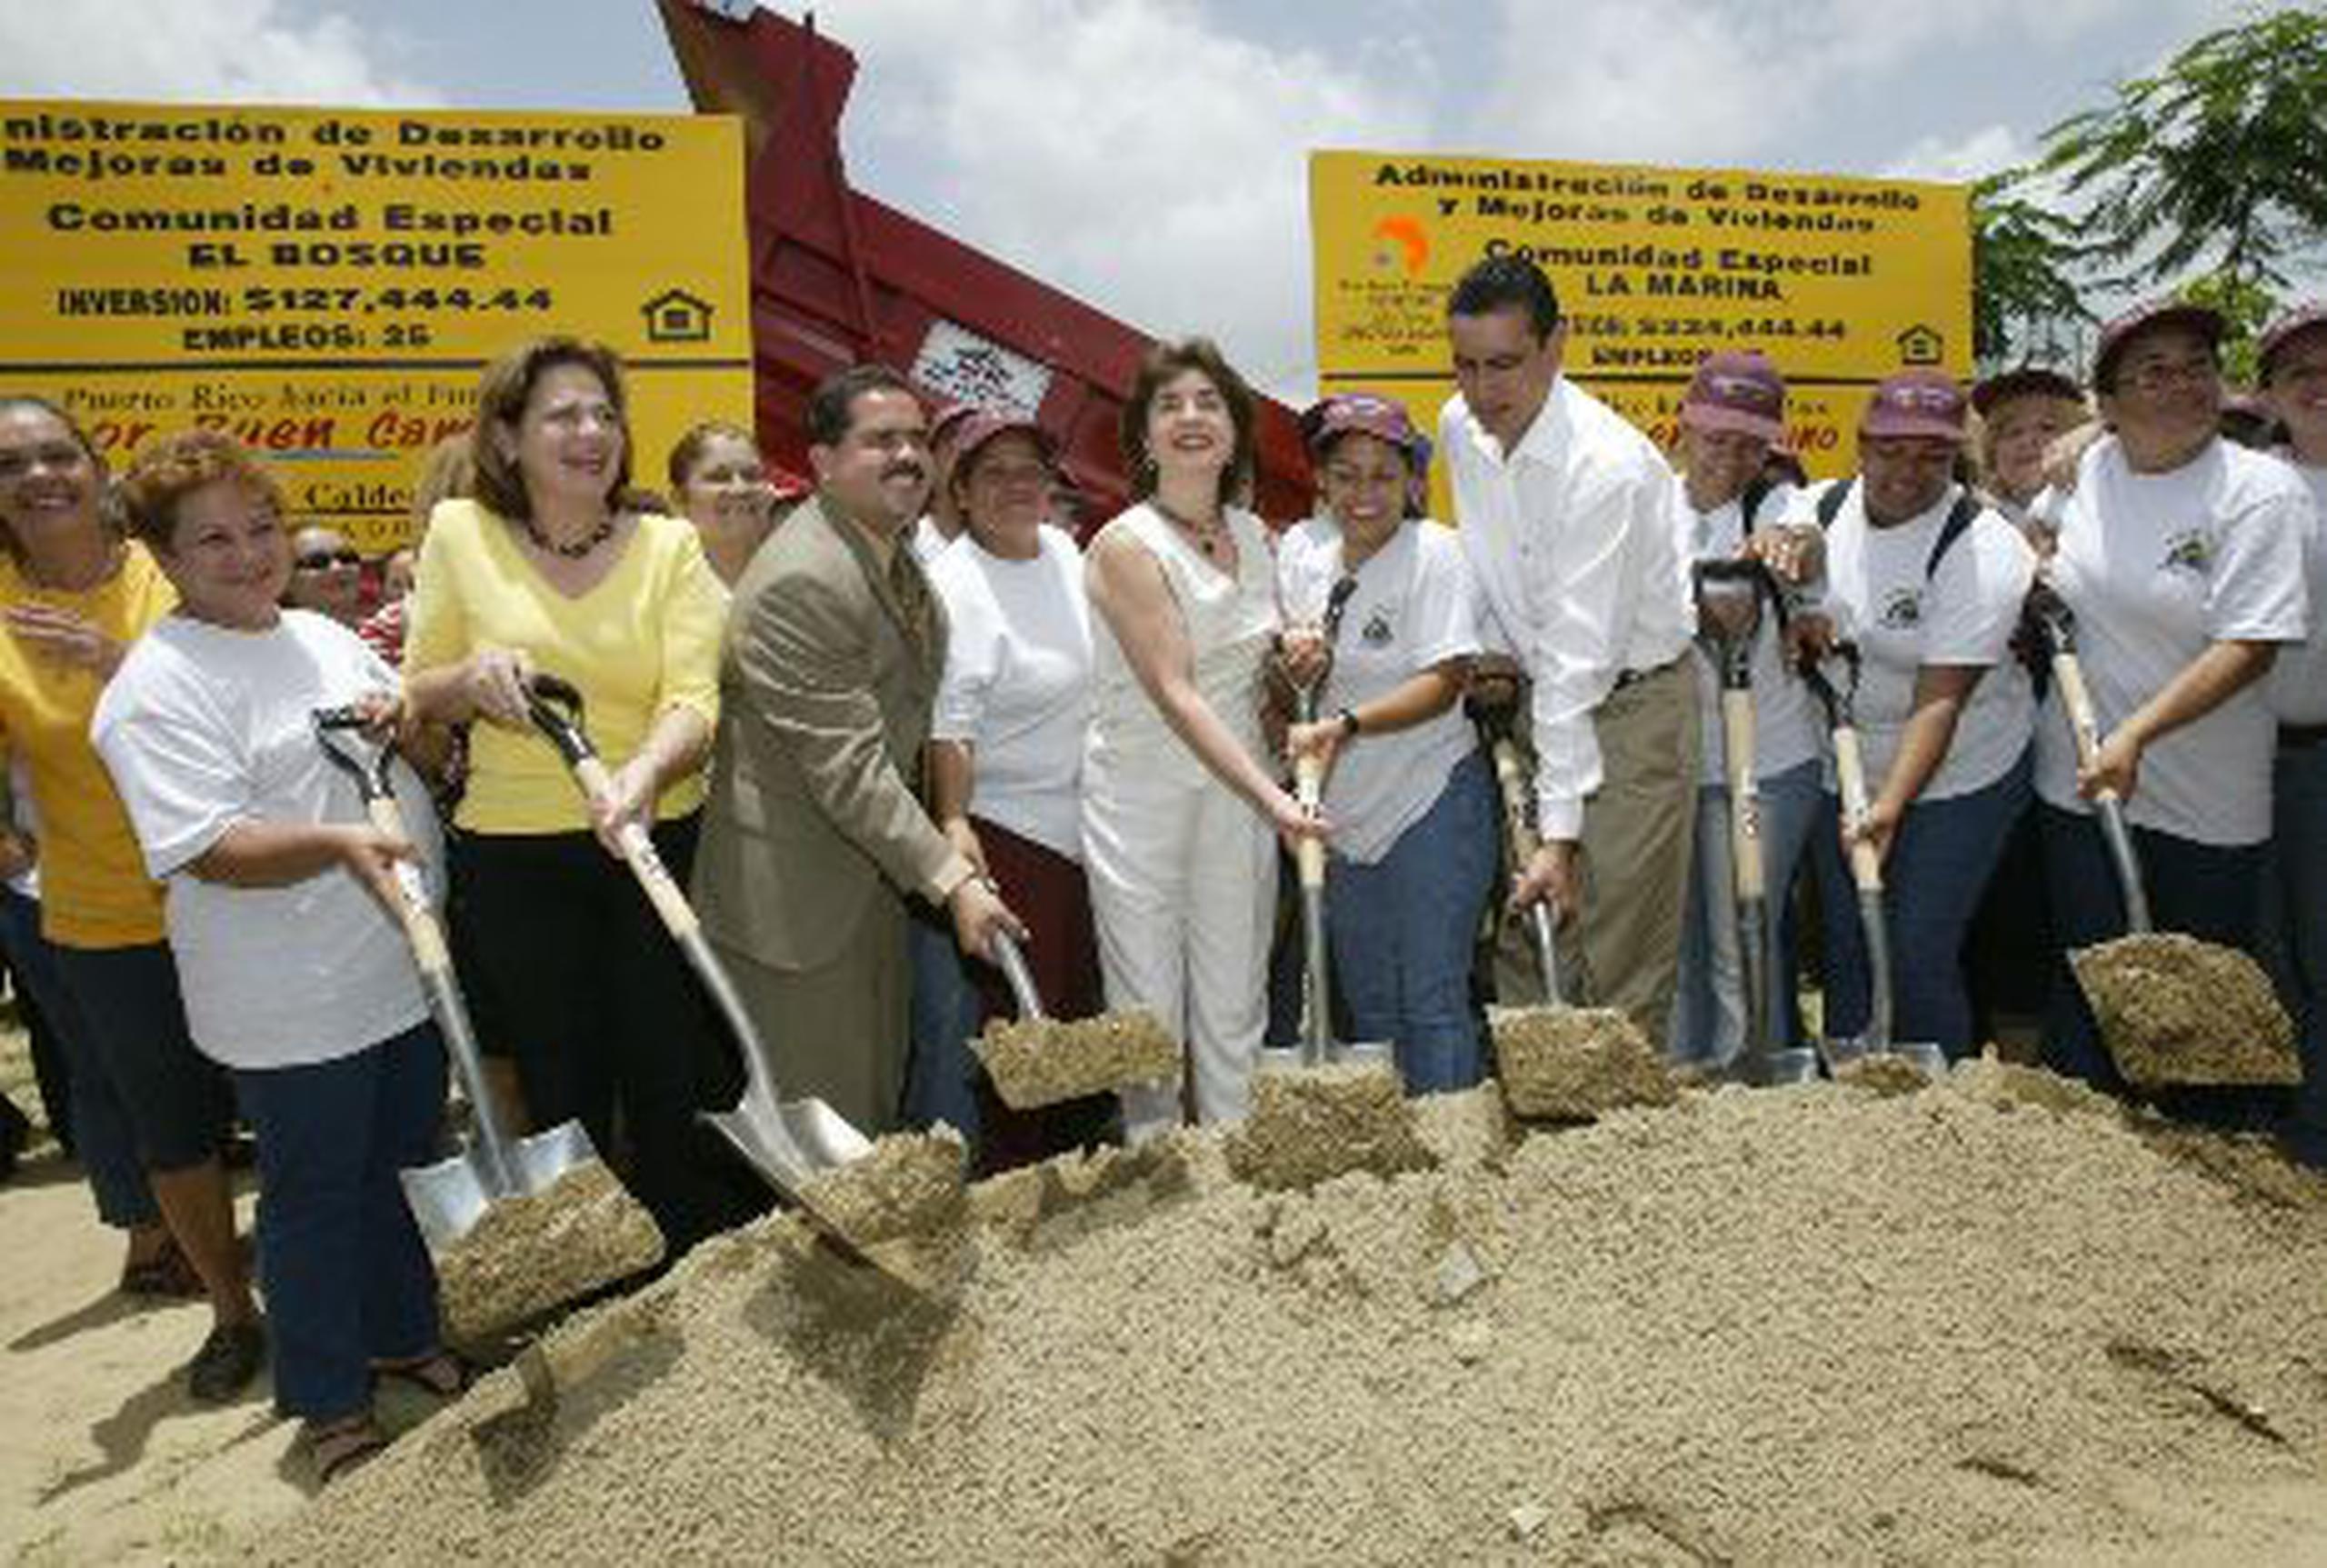 En esta imagen del 2003, la entonces gobernadora Sila Calderón (al centro)  participa en un acto simbólico en San Lorenzo como parte del Programa de Comunidades Especiales.&nbsp;<font color="yellow">(Archivo)</font>